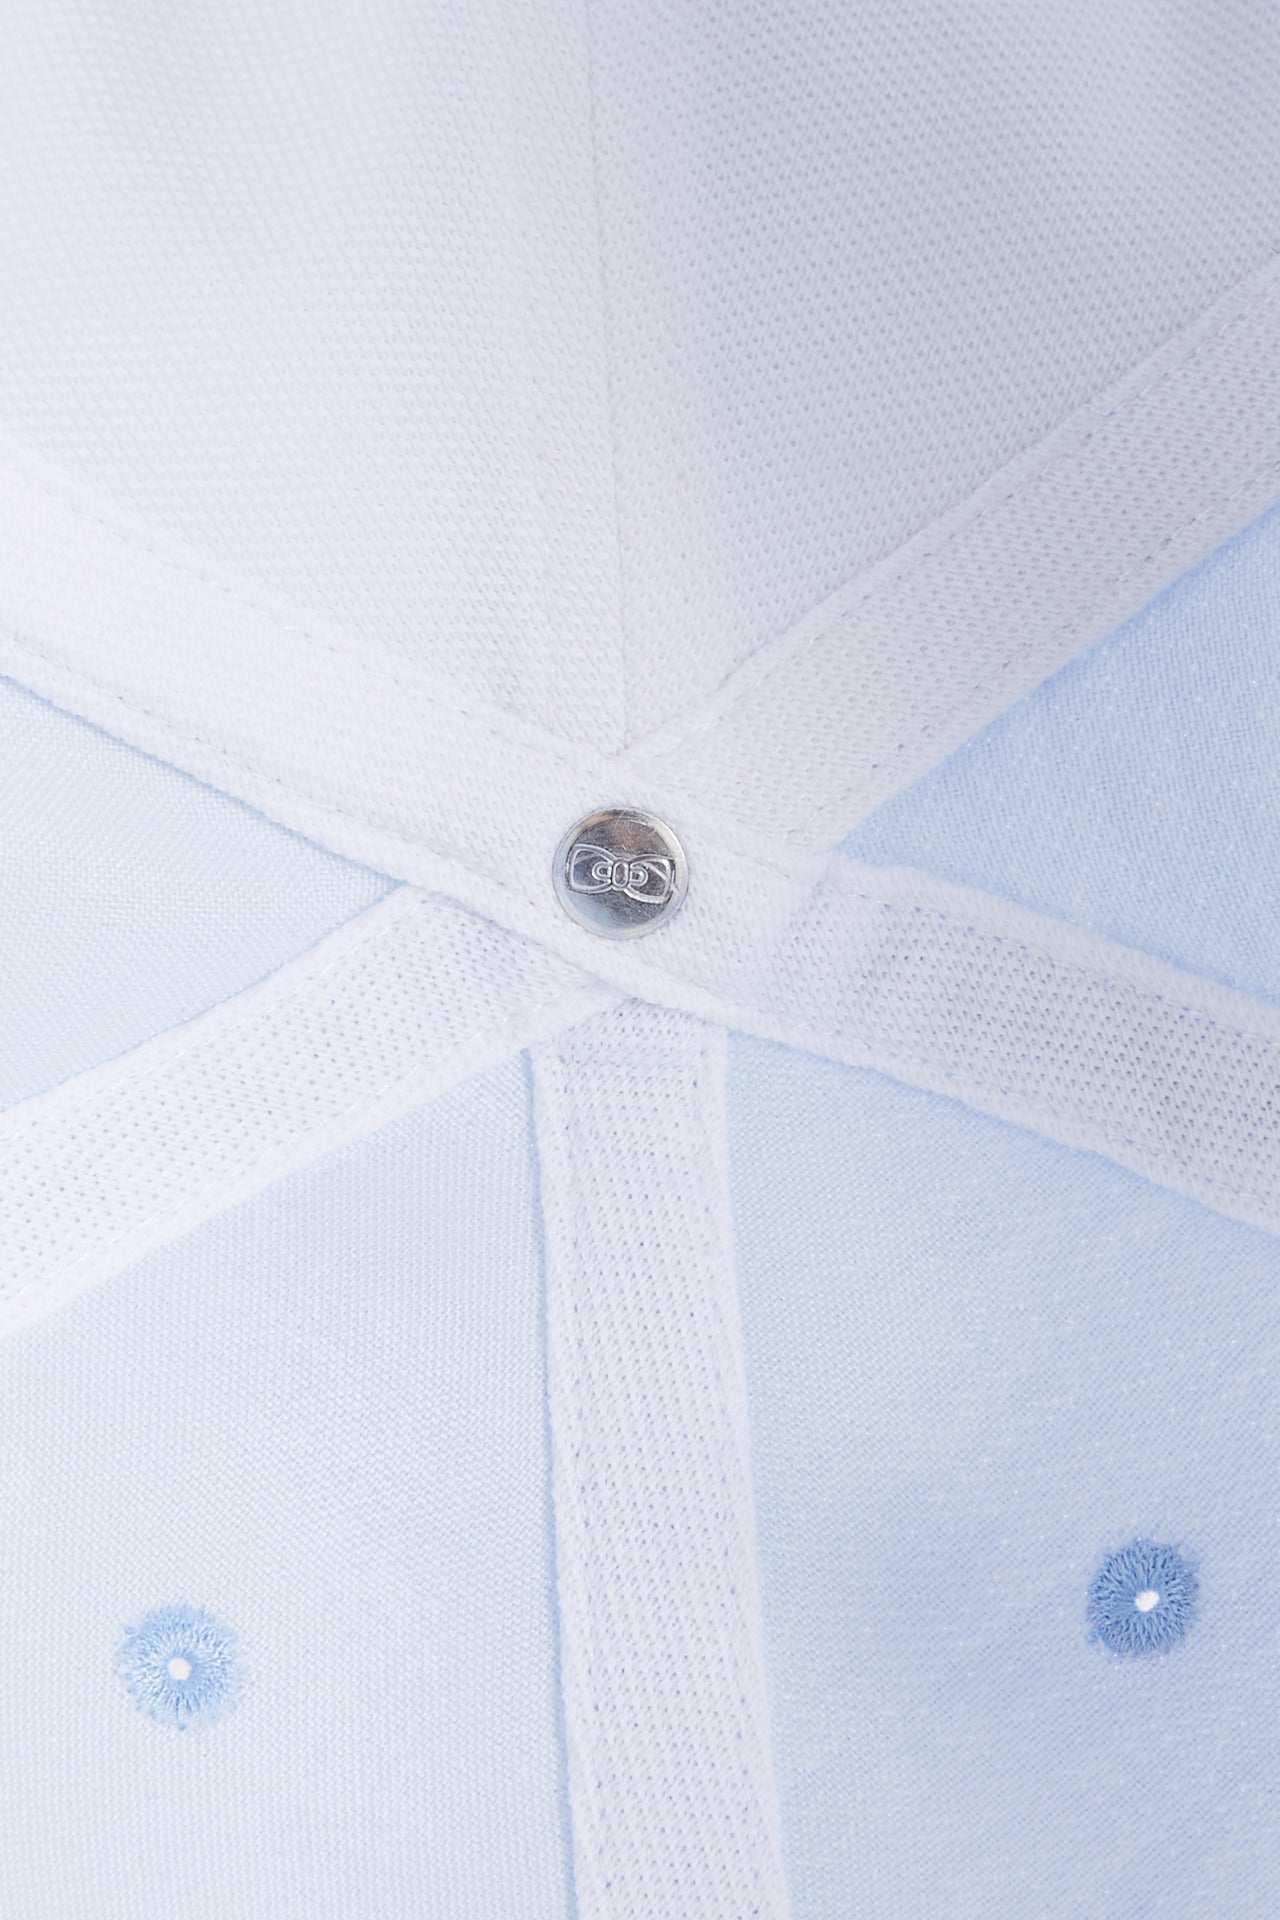 Casquette bleue unie en coton - Image 3